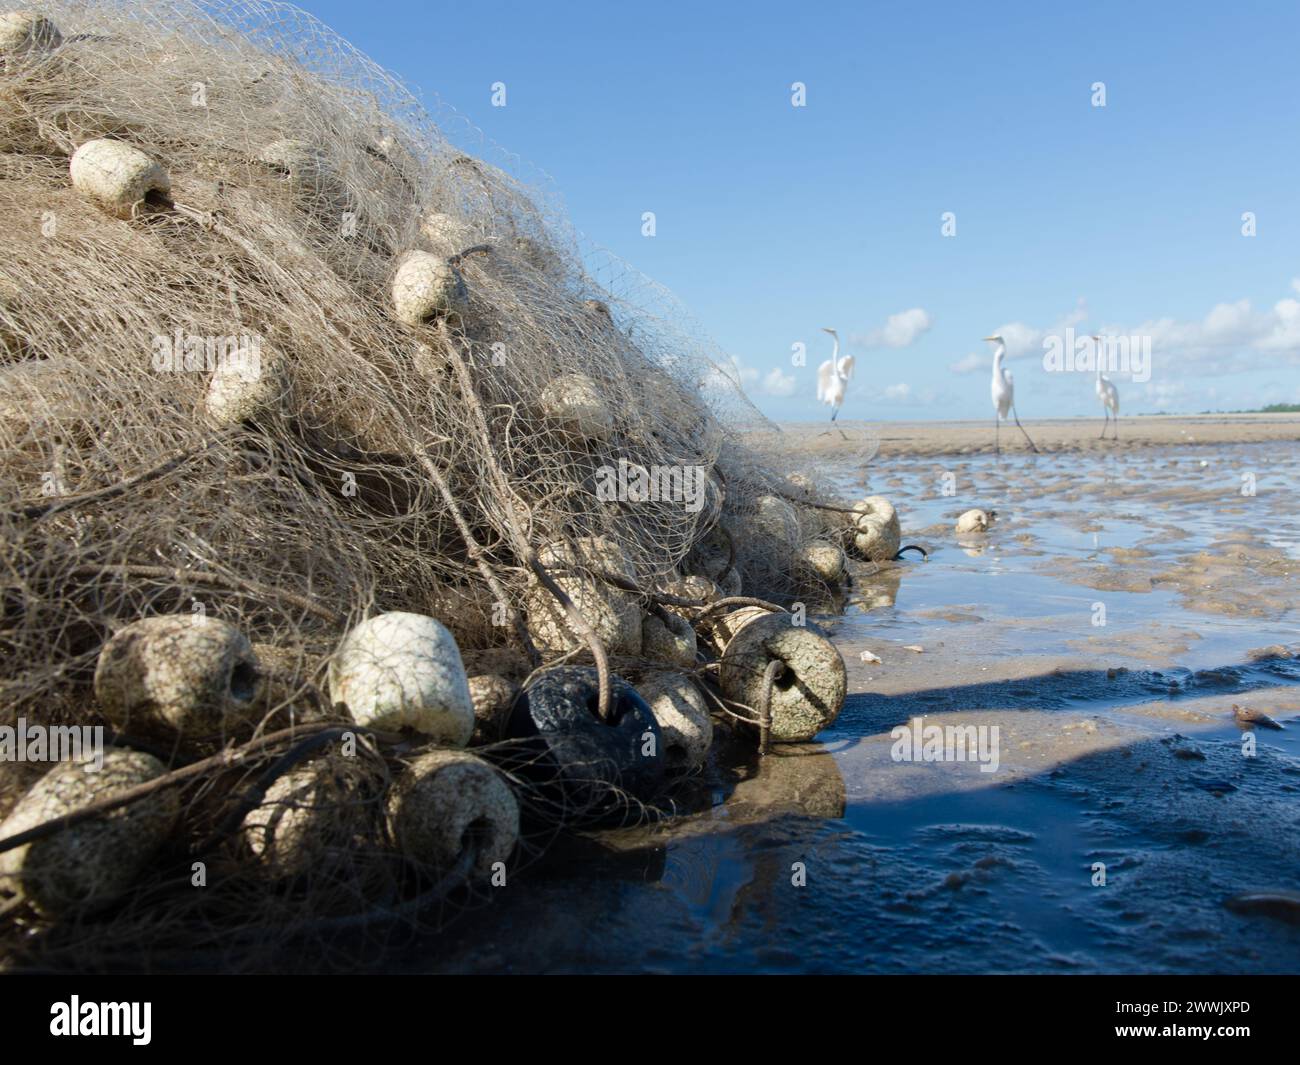 Garzas blancas en el borde de una playa. Pájaro marino en busca de comida. Animales salvajes. Foto de stock